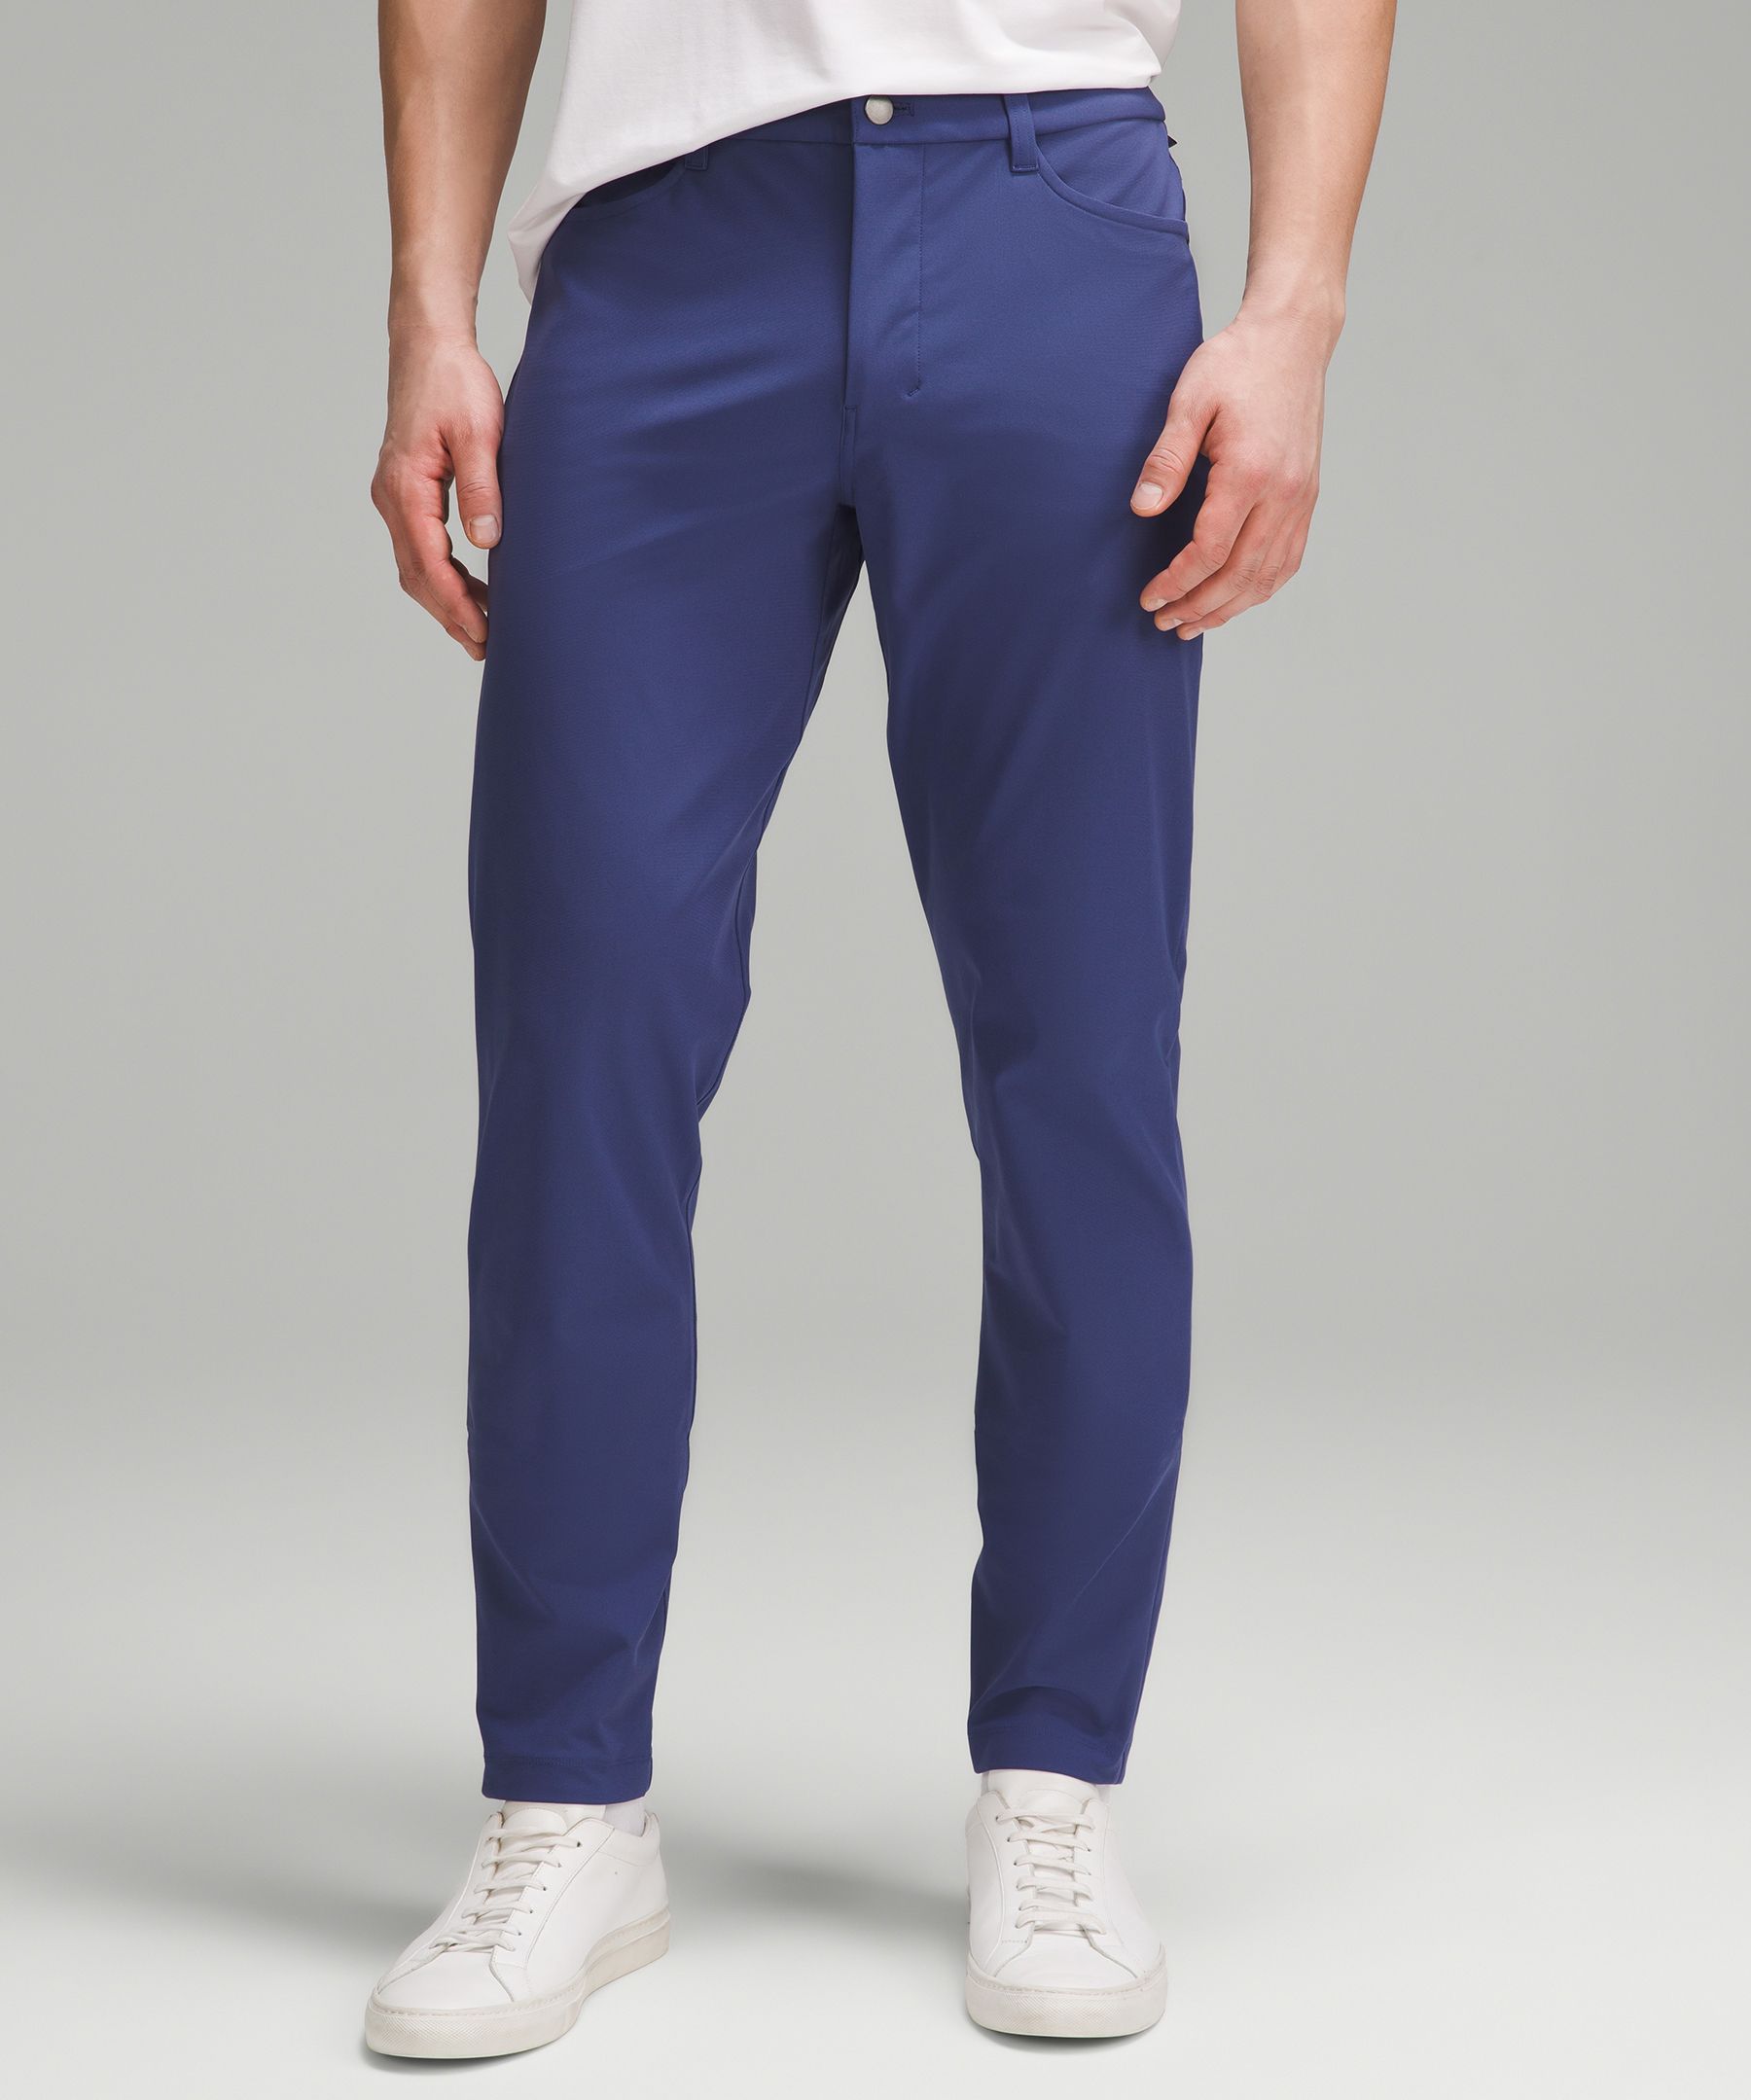 LULULEMON COMMISSION ABC 5-Pocket Pants Men's Size 34 Gray Warpstreme  Trousers $54.95 - PicClick